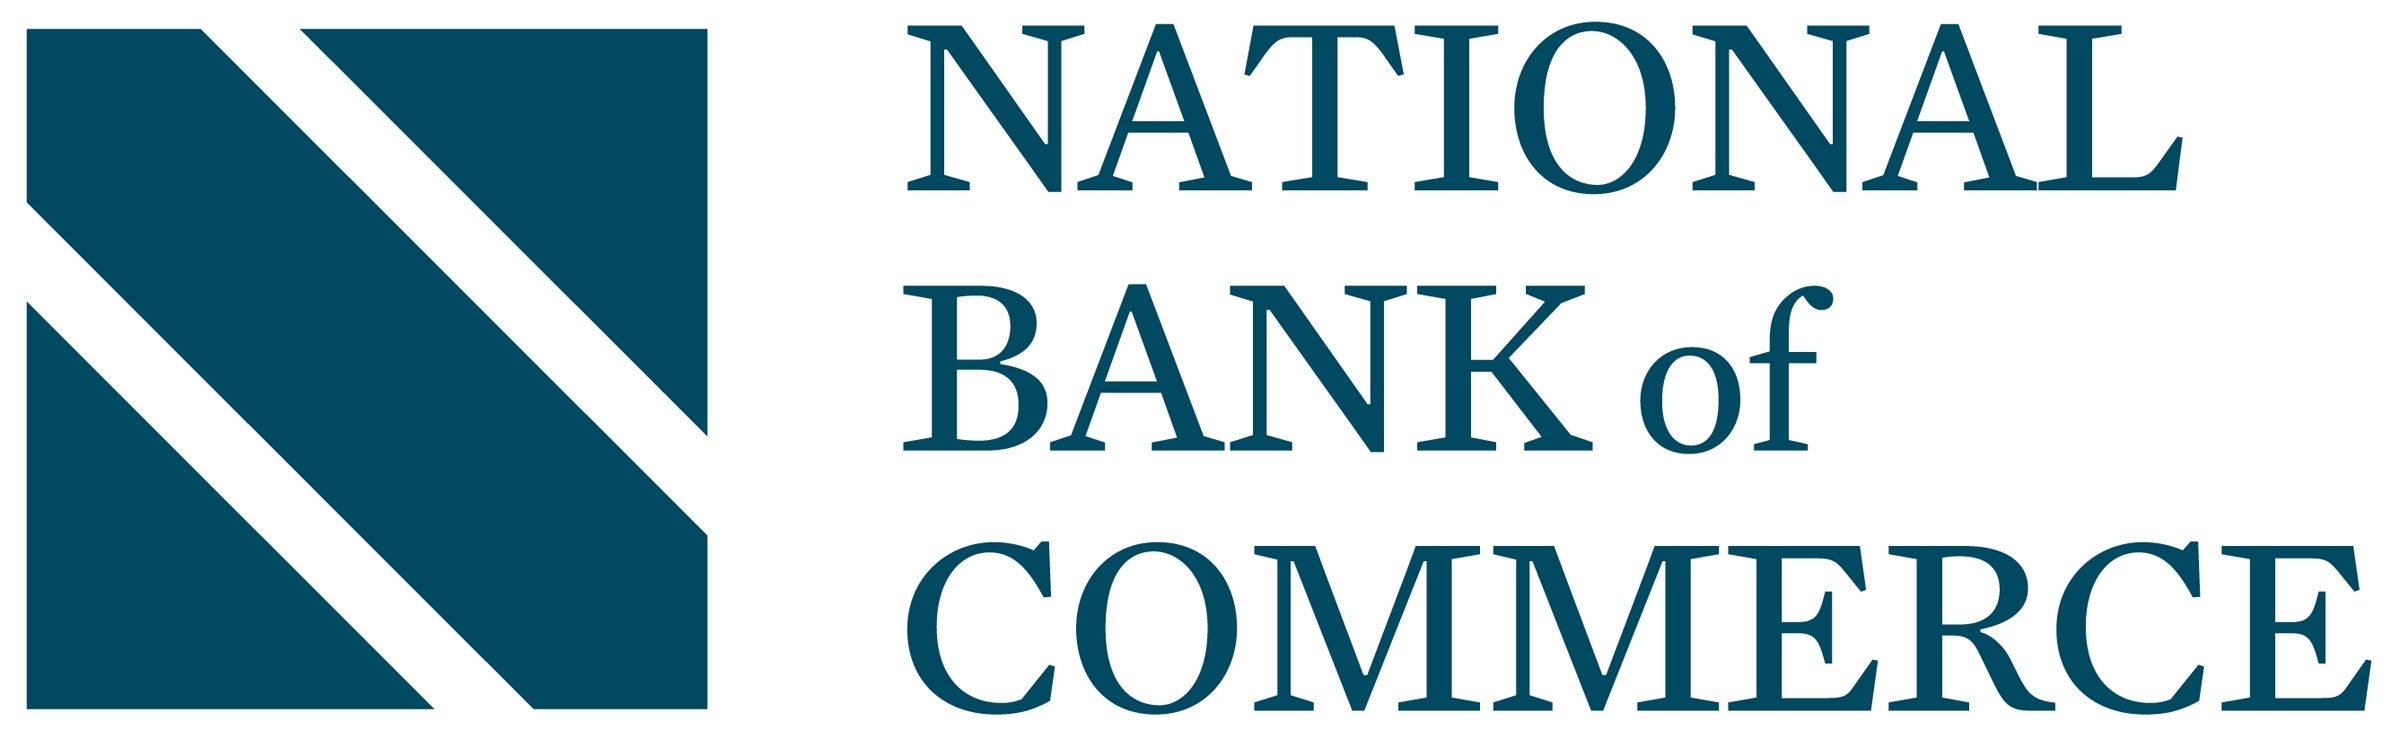 National Bank of Commerce.jpg